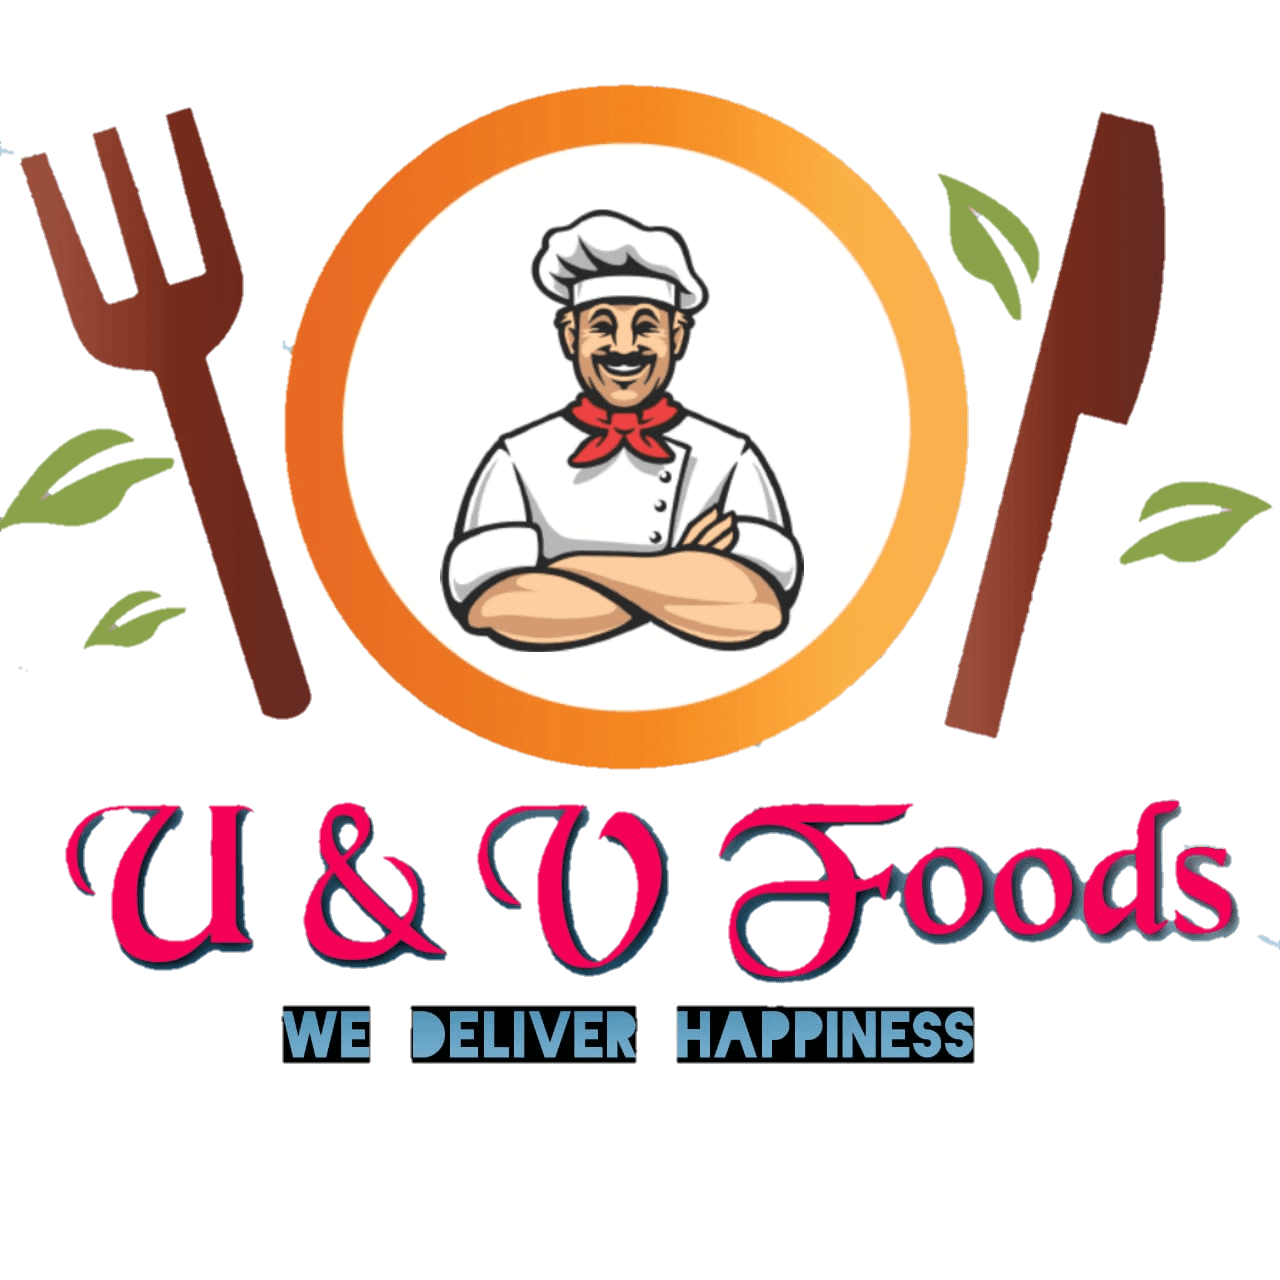 Uandv Foods